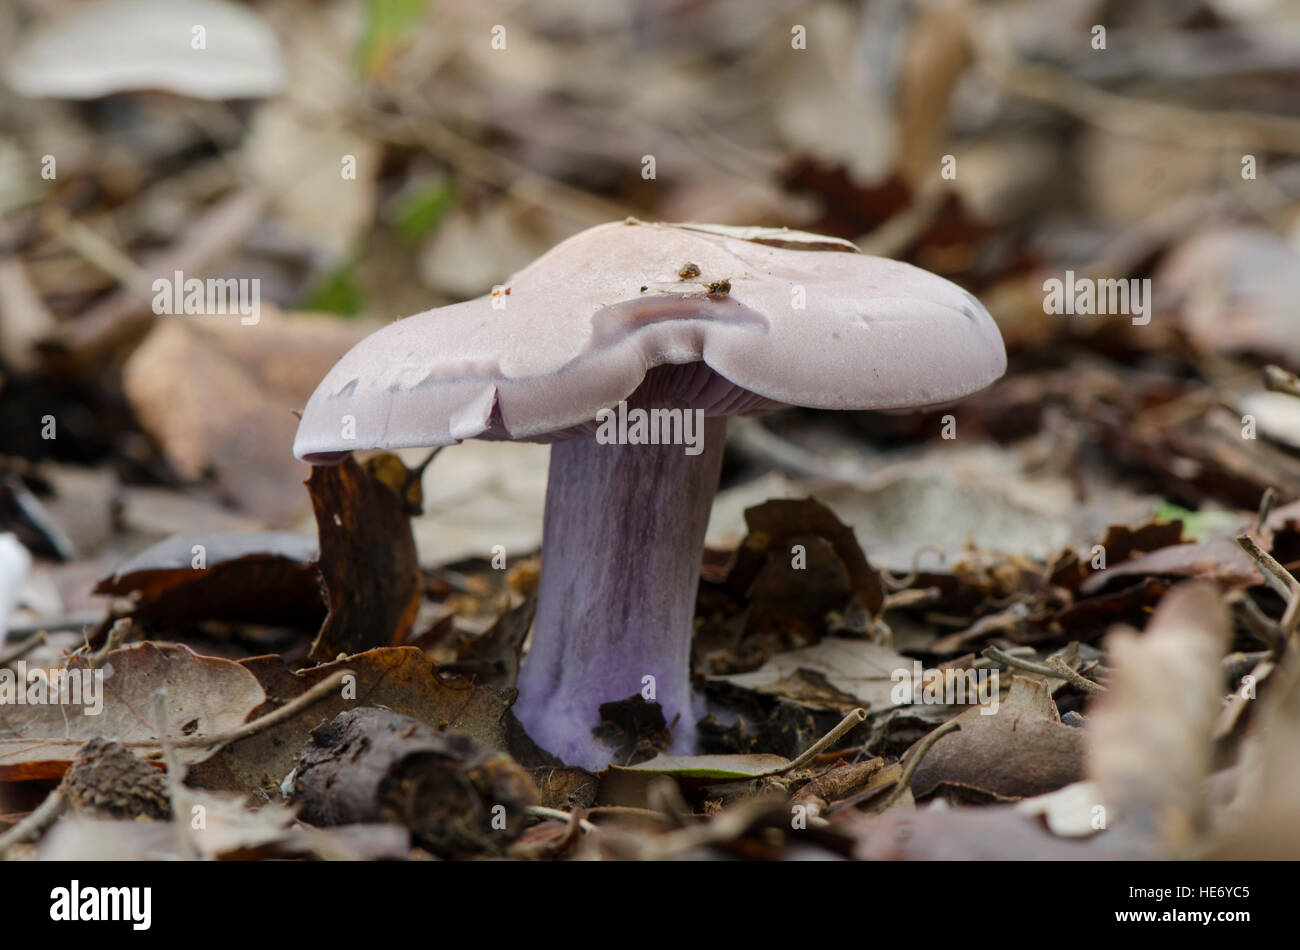 Wood blewit, edible mushroom growing in forest. Spain. Stock Photo